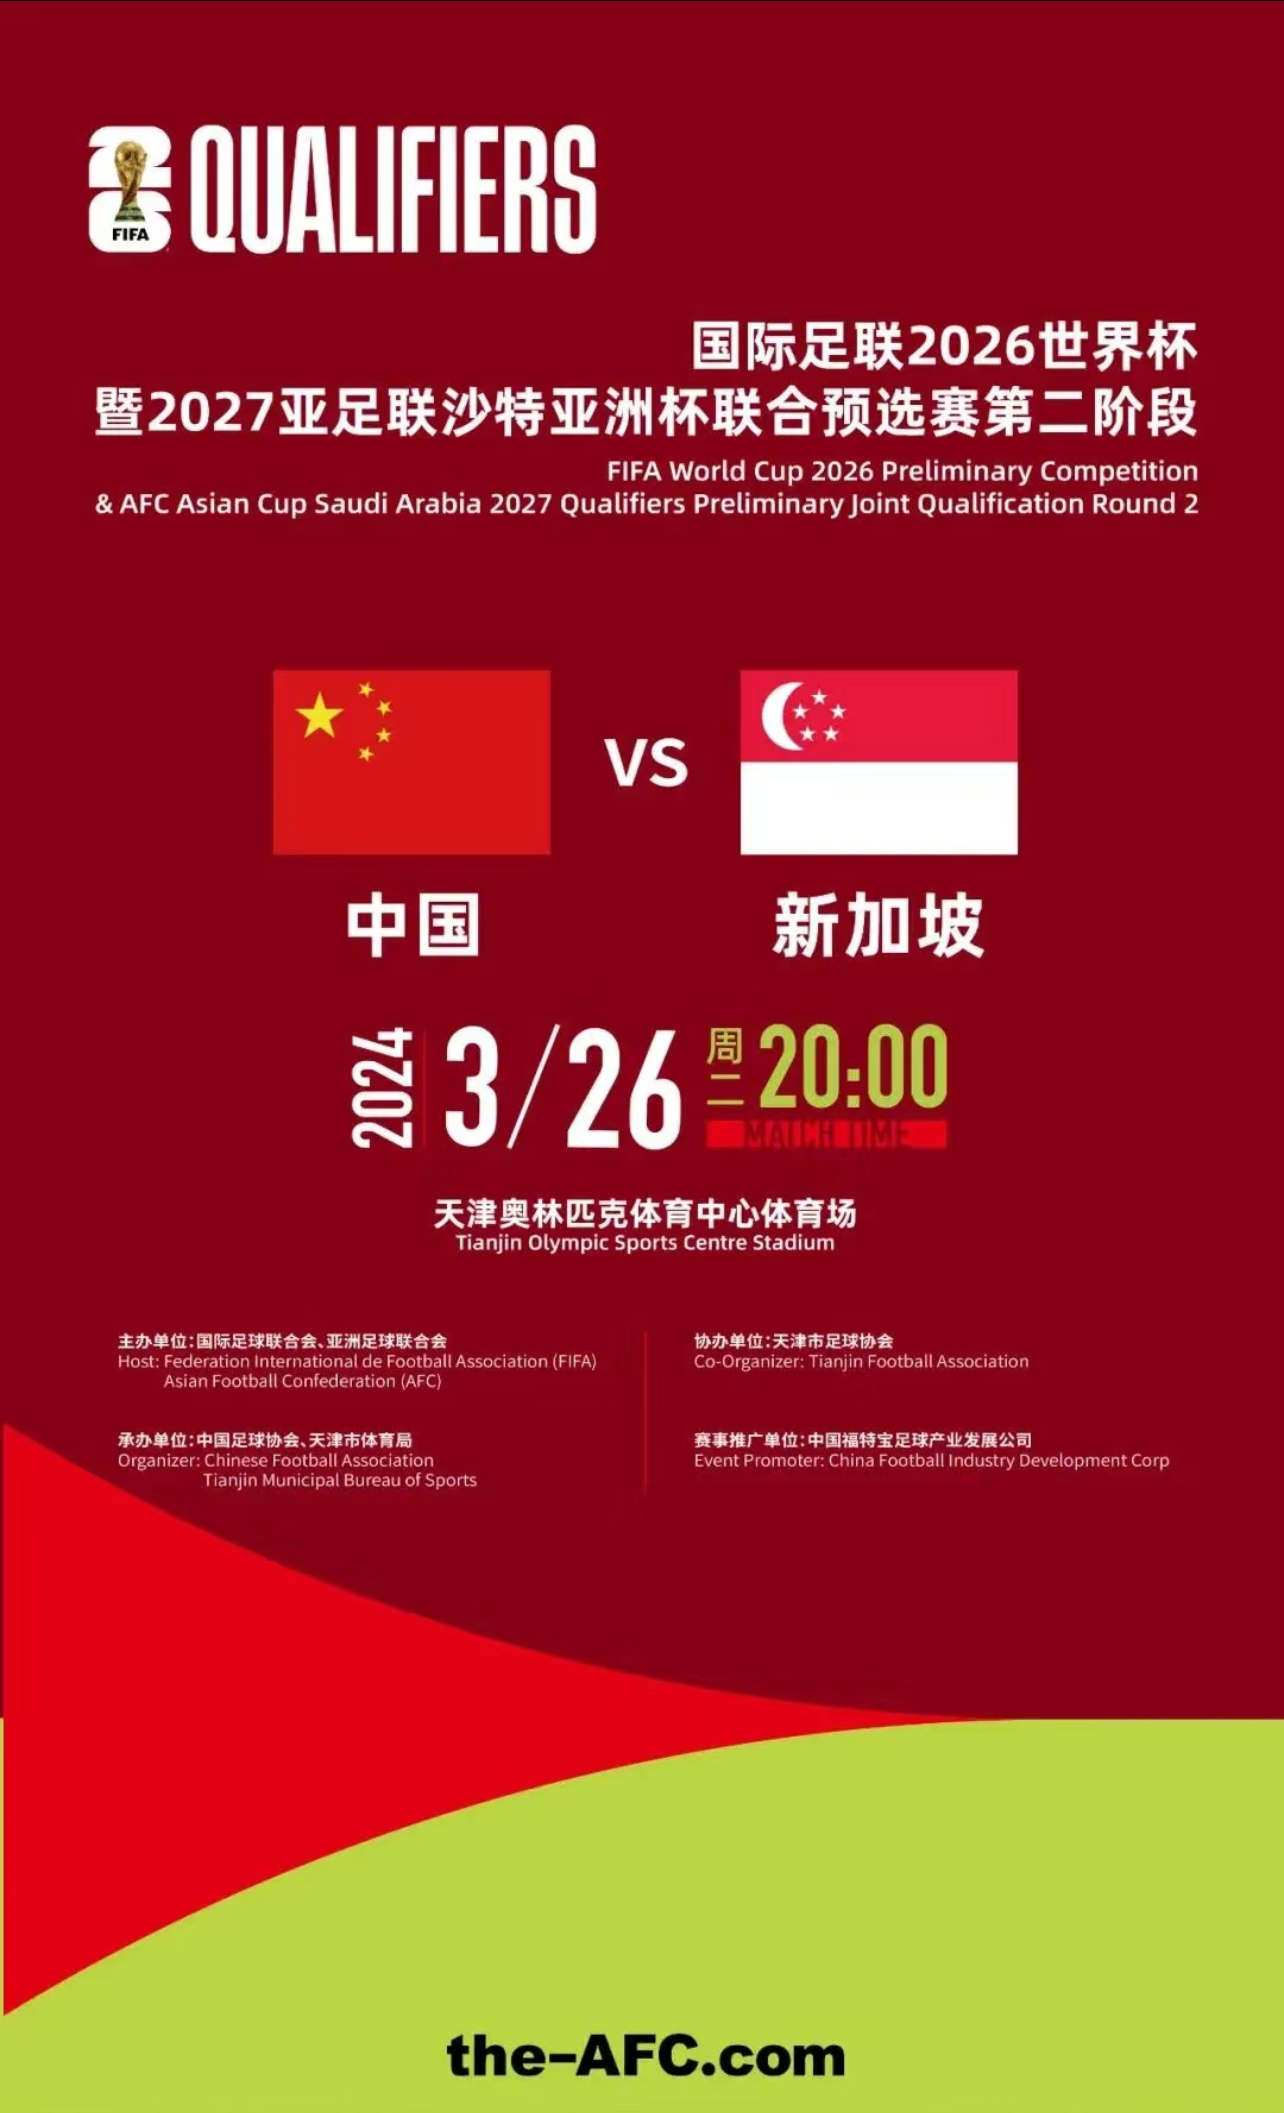 [天津]2026世界杯足球赛亚洲区预选赛 男足世预赛中国队比赛 中国vs新加坡